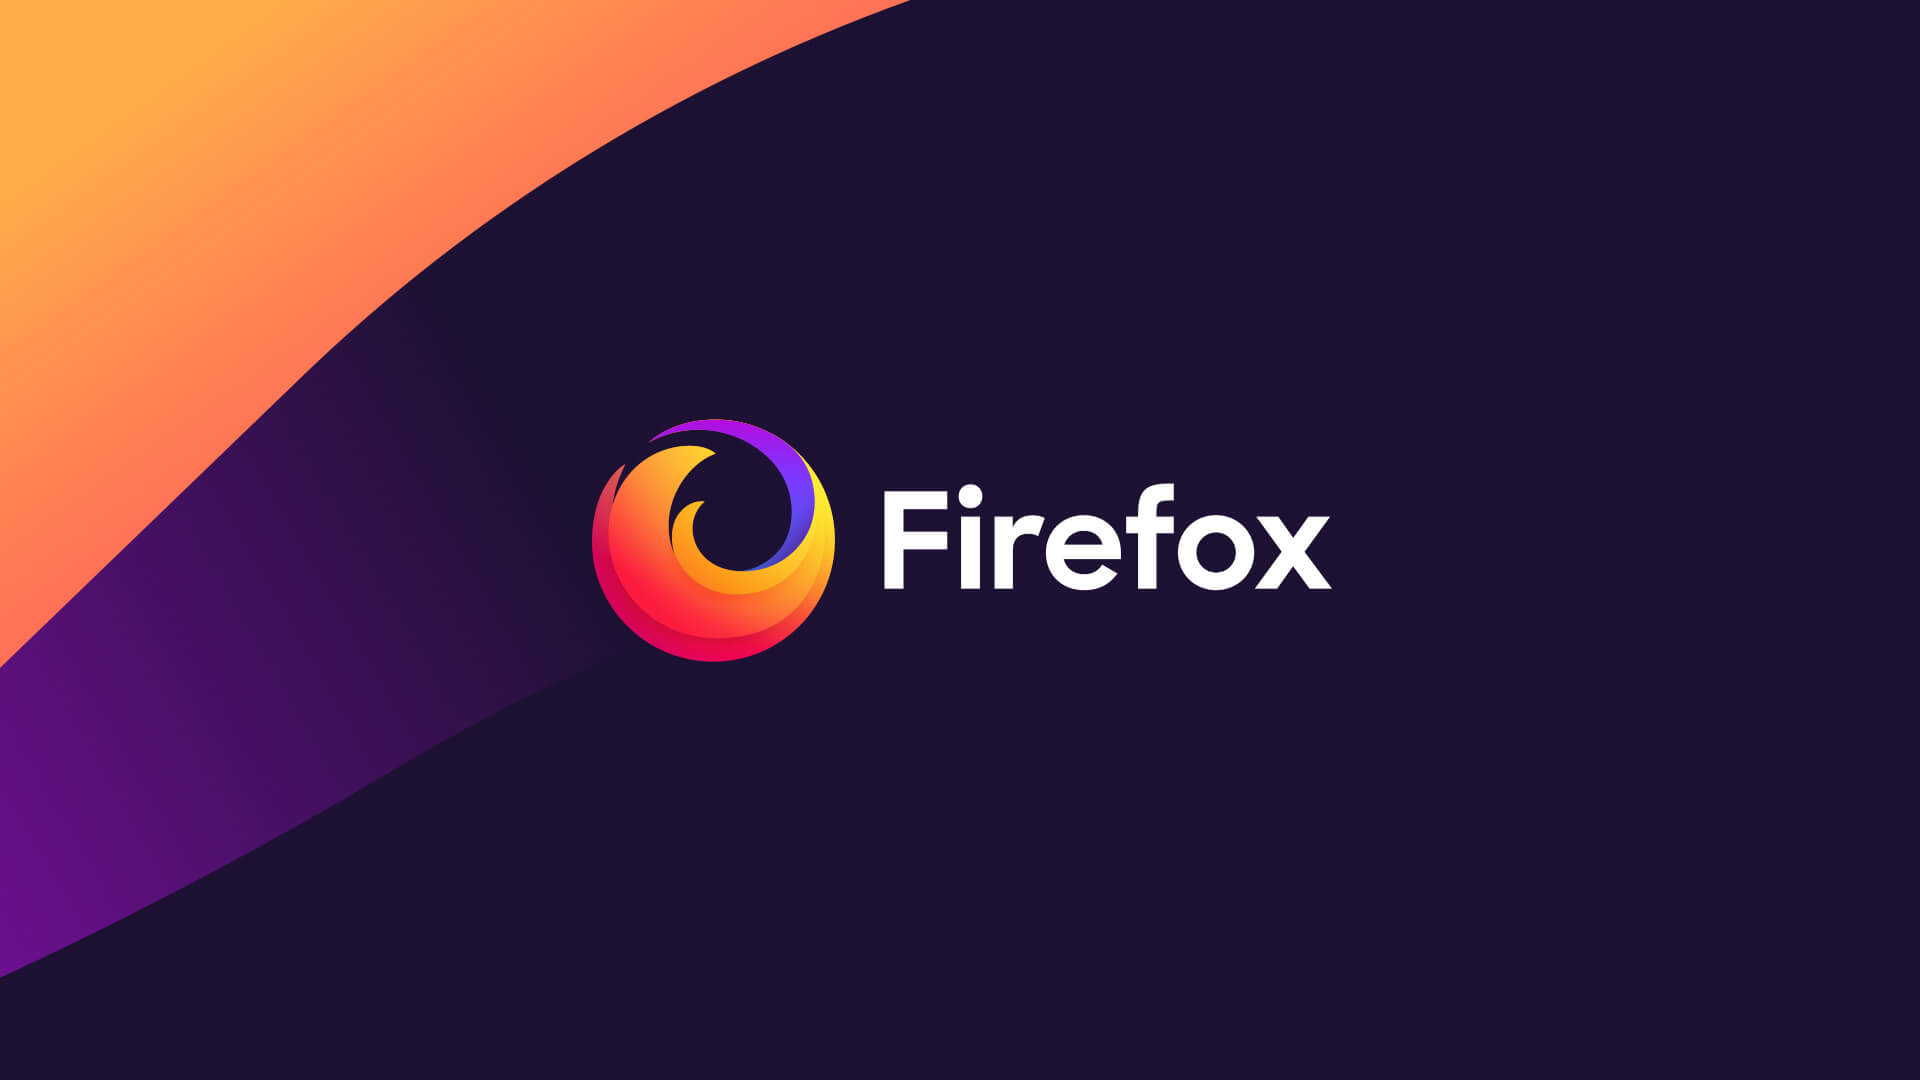 Mozilla Firefox 76.0 For Ubuntu 20.04 LTS